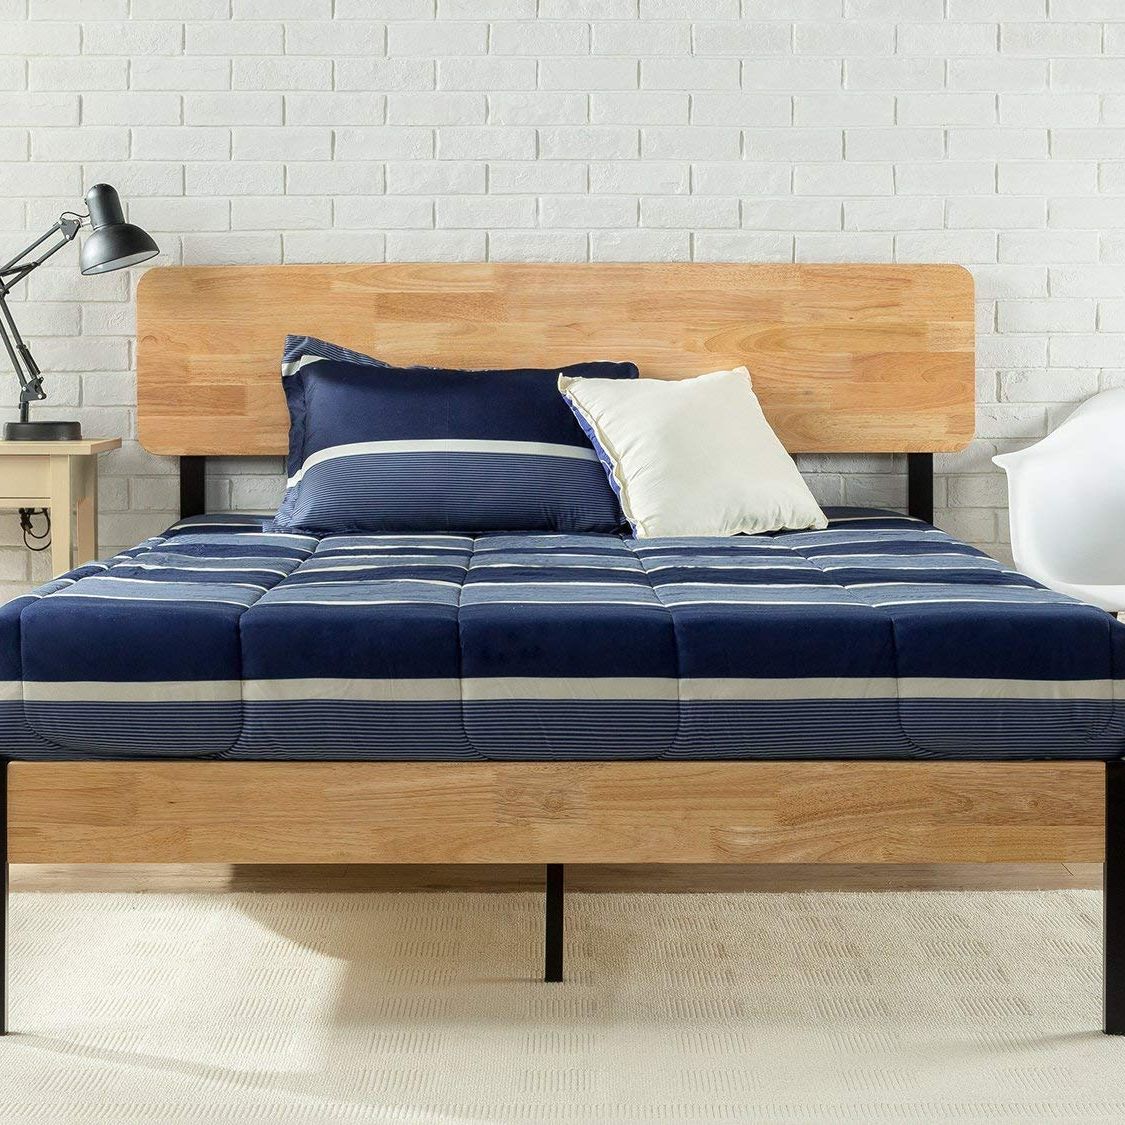 21 Best Platform Beds 2022 The Strategist, Full Size Wooden Platform Bed Frame